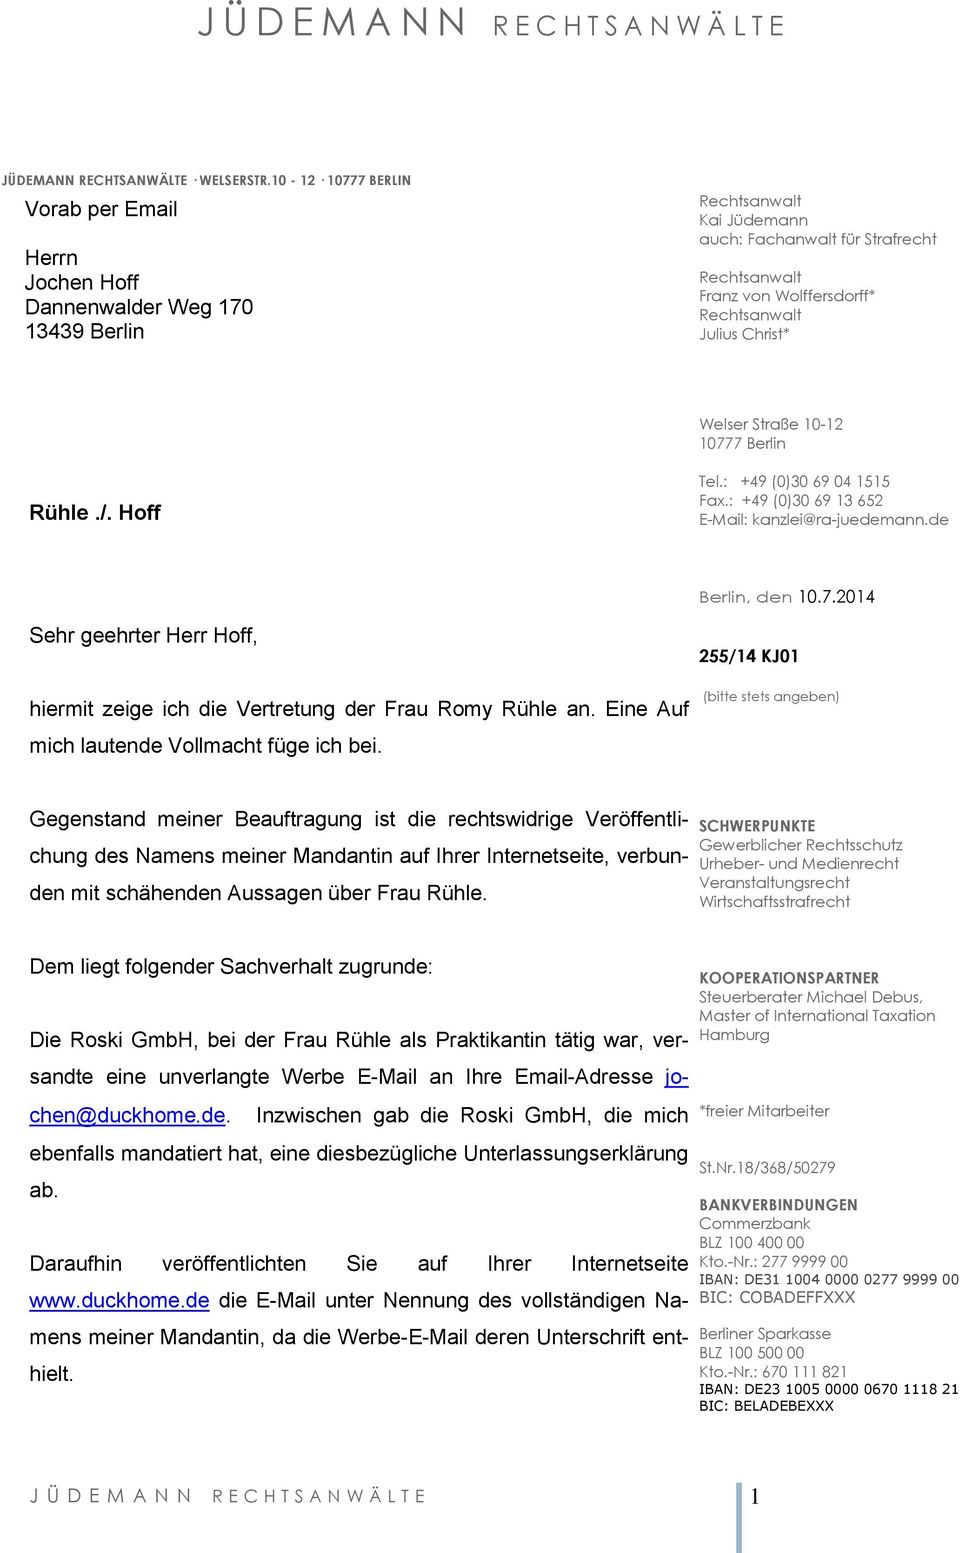 Berlin Rühle./. Hoff Tel.: +49 (0)30 69 04 1515 Fax.: +49 (0)30 69 13 652 E-Mail: kanzlei@ra-juedemann.de Berlin, den 10.7.